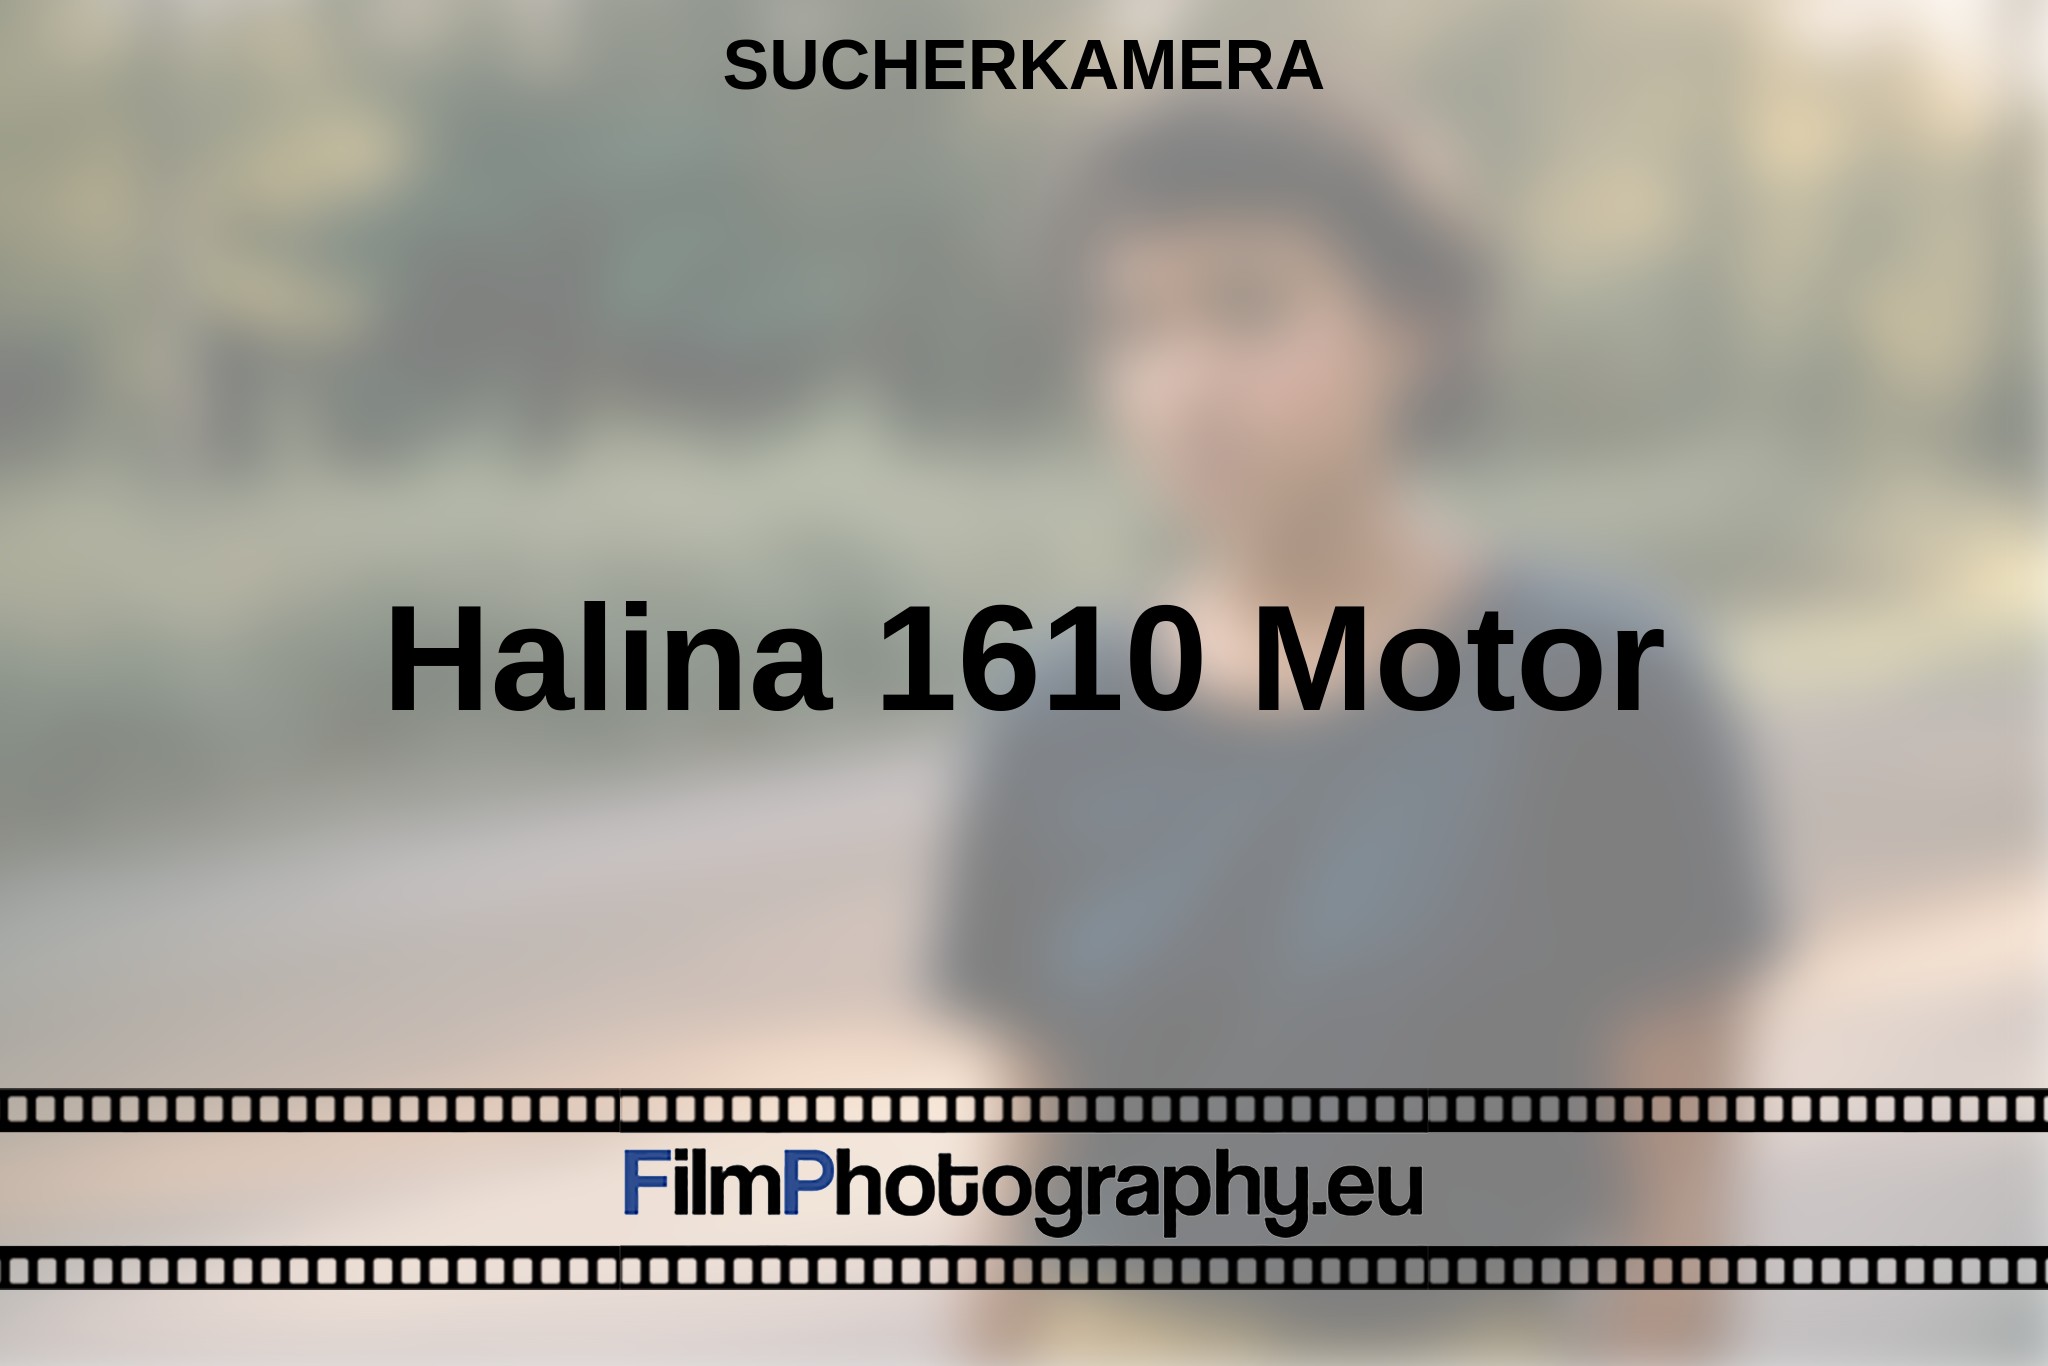 halina-1610-motor-sucherkamera-bnv.jpg